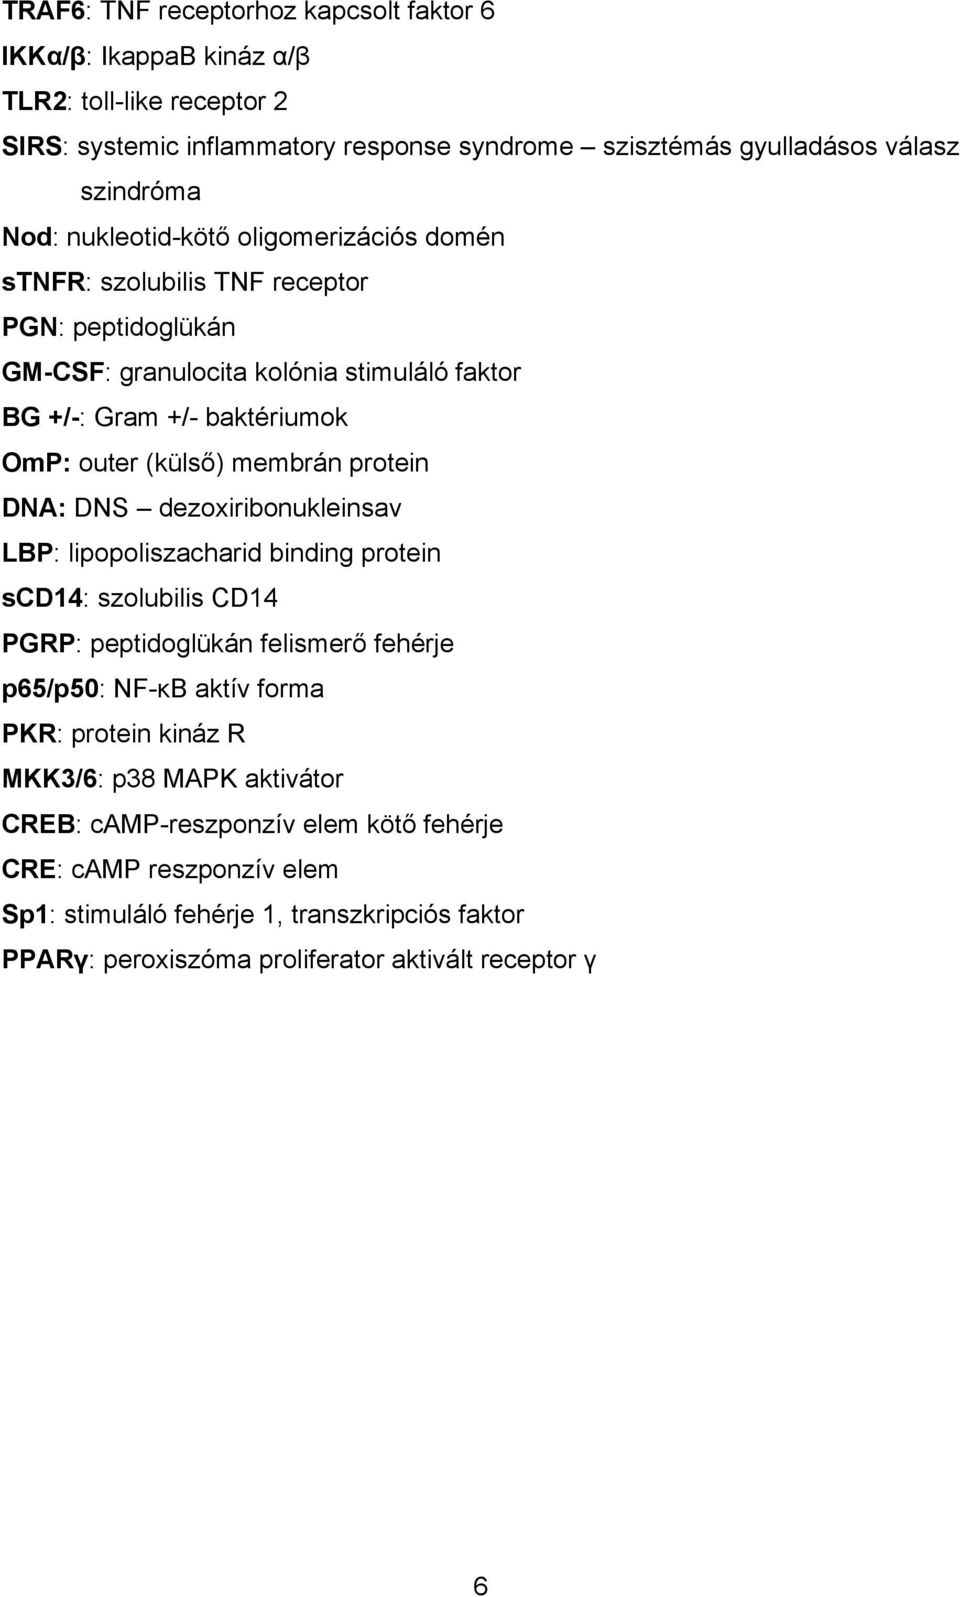 protein DNA: DNS dezoxiribonukleinsav LBP: lipopoliszacharid binding protein scd14: szolubilis CD14 PGRP: peptidoglükán felismerő fehérje p65/p50: NF-κB aktív forma PKR: protein kináz R